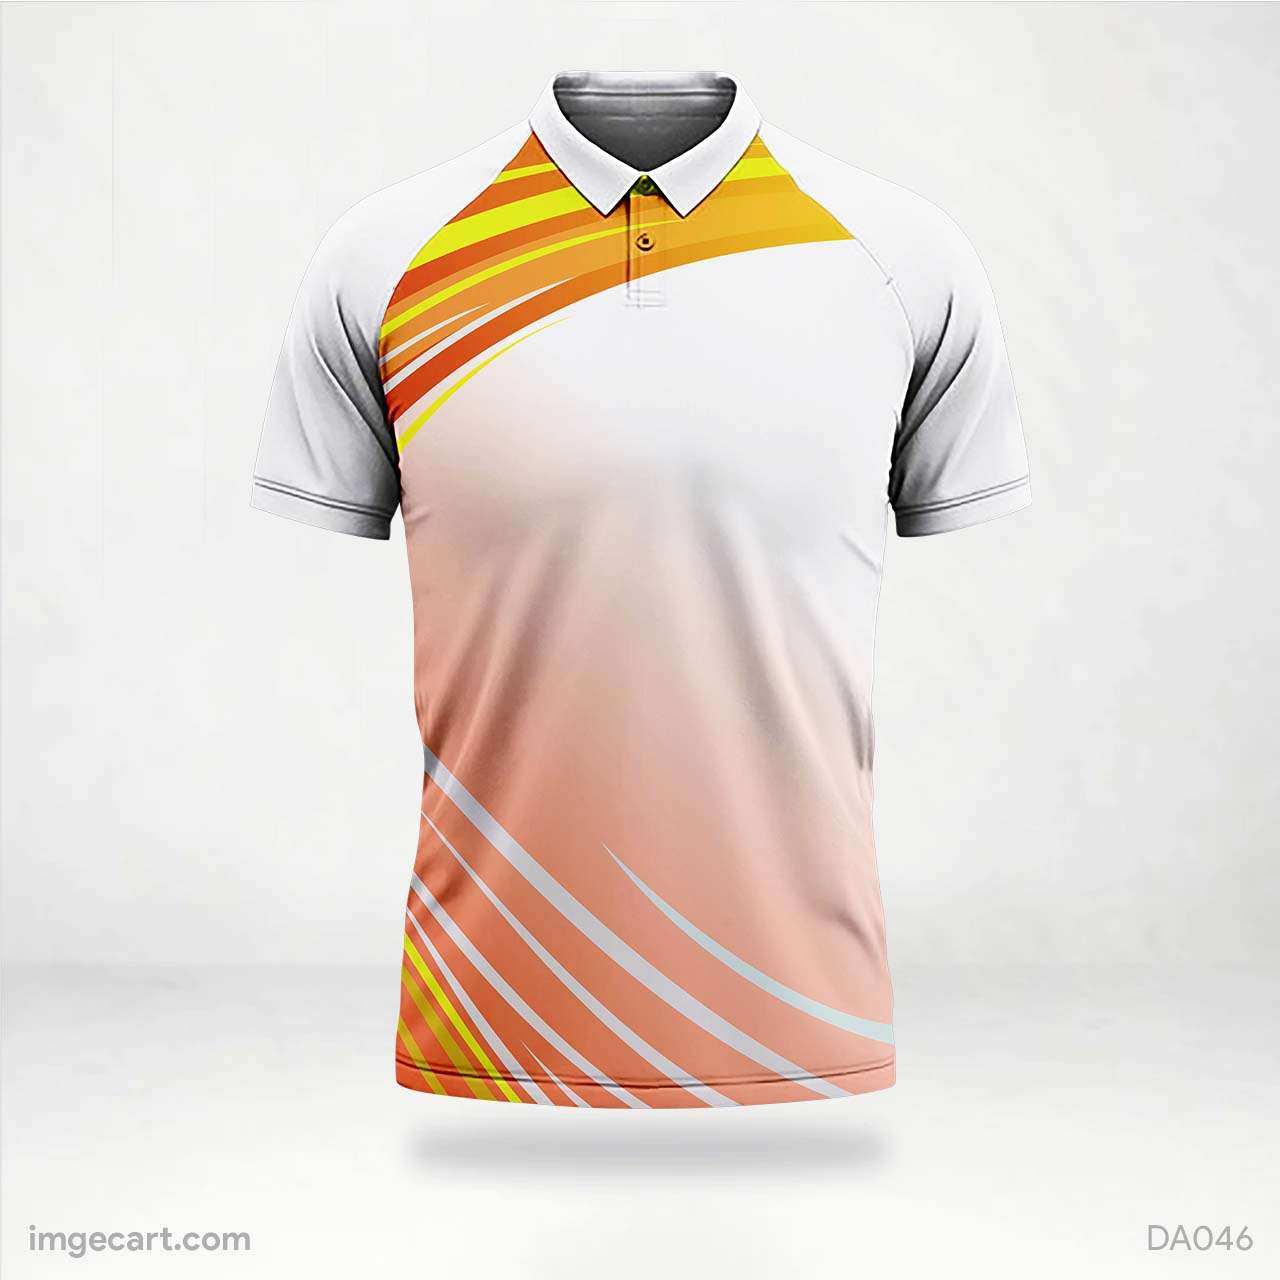 Cricket Jersey design White with Orange Gradient - imgecart